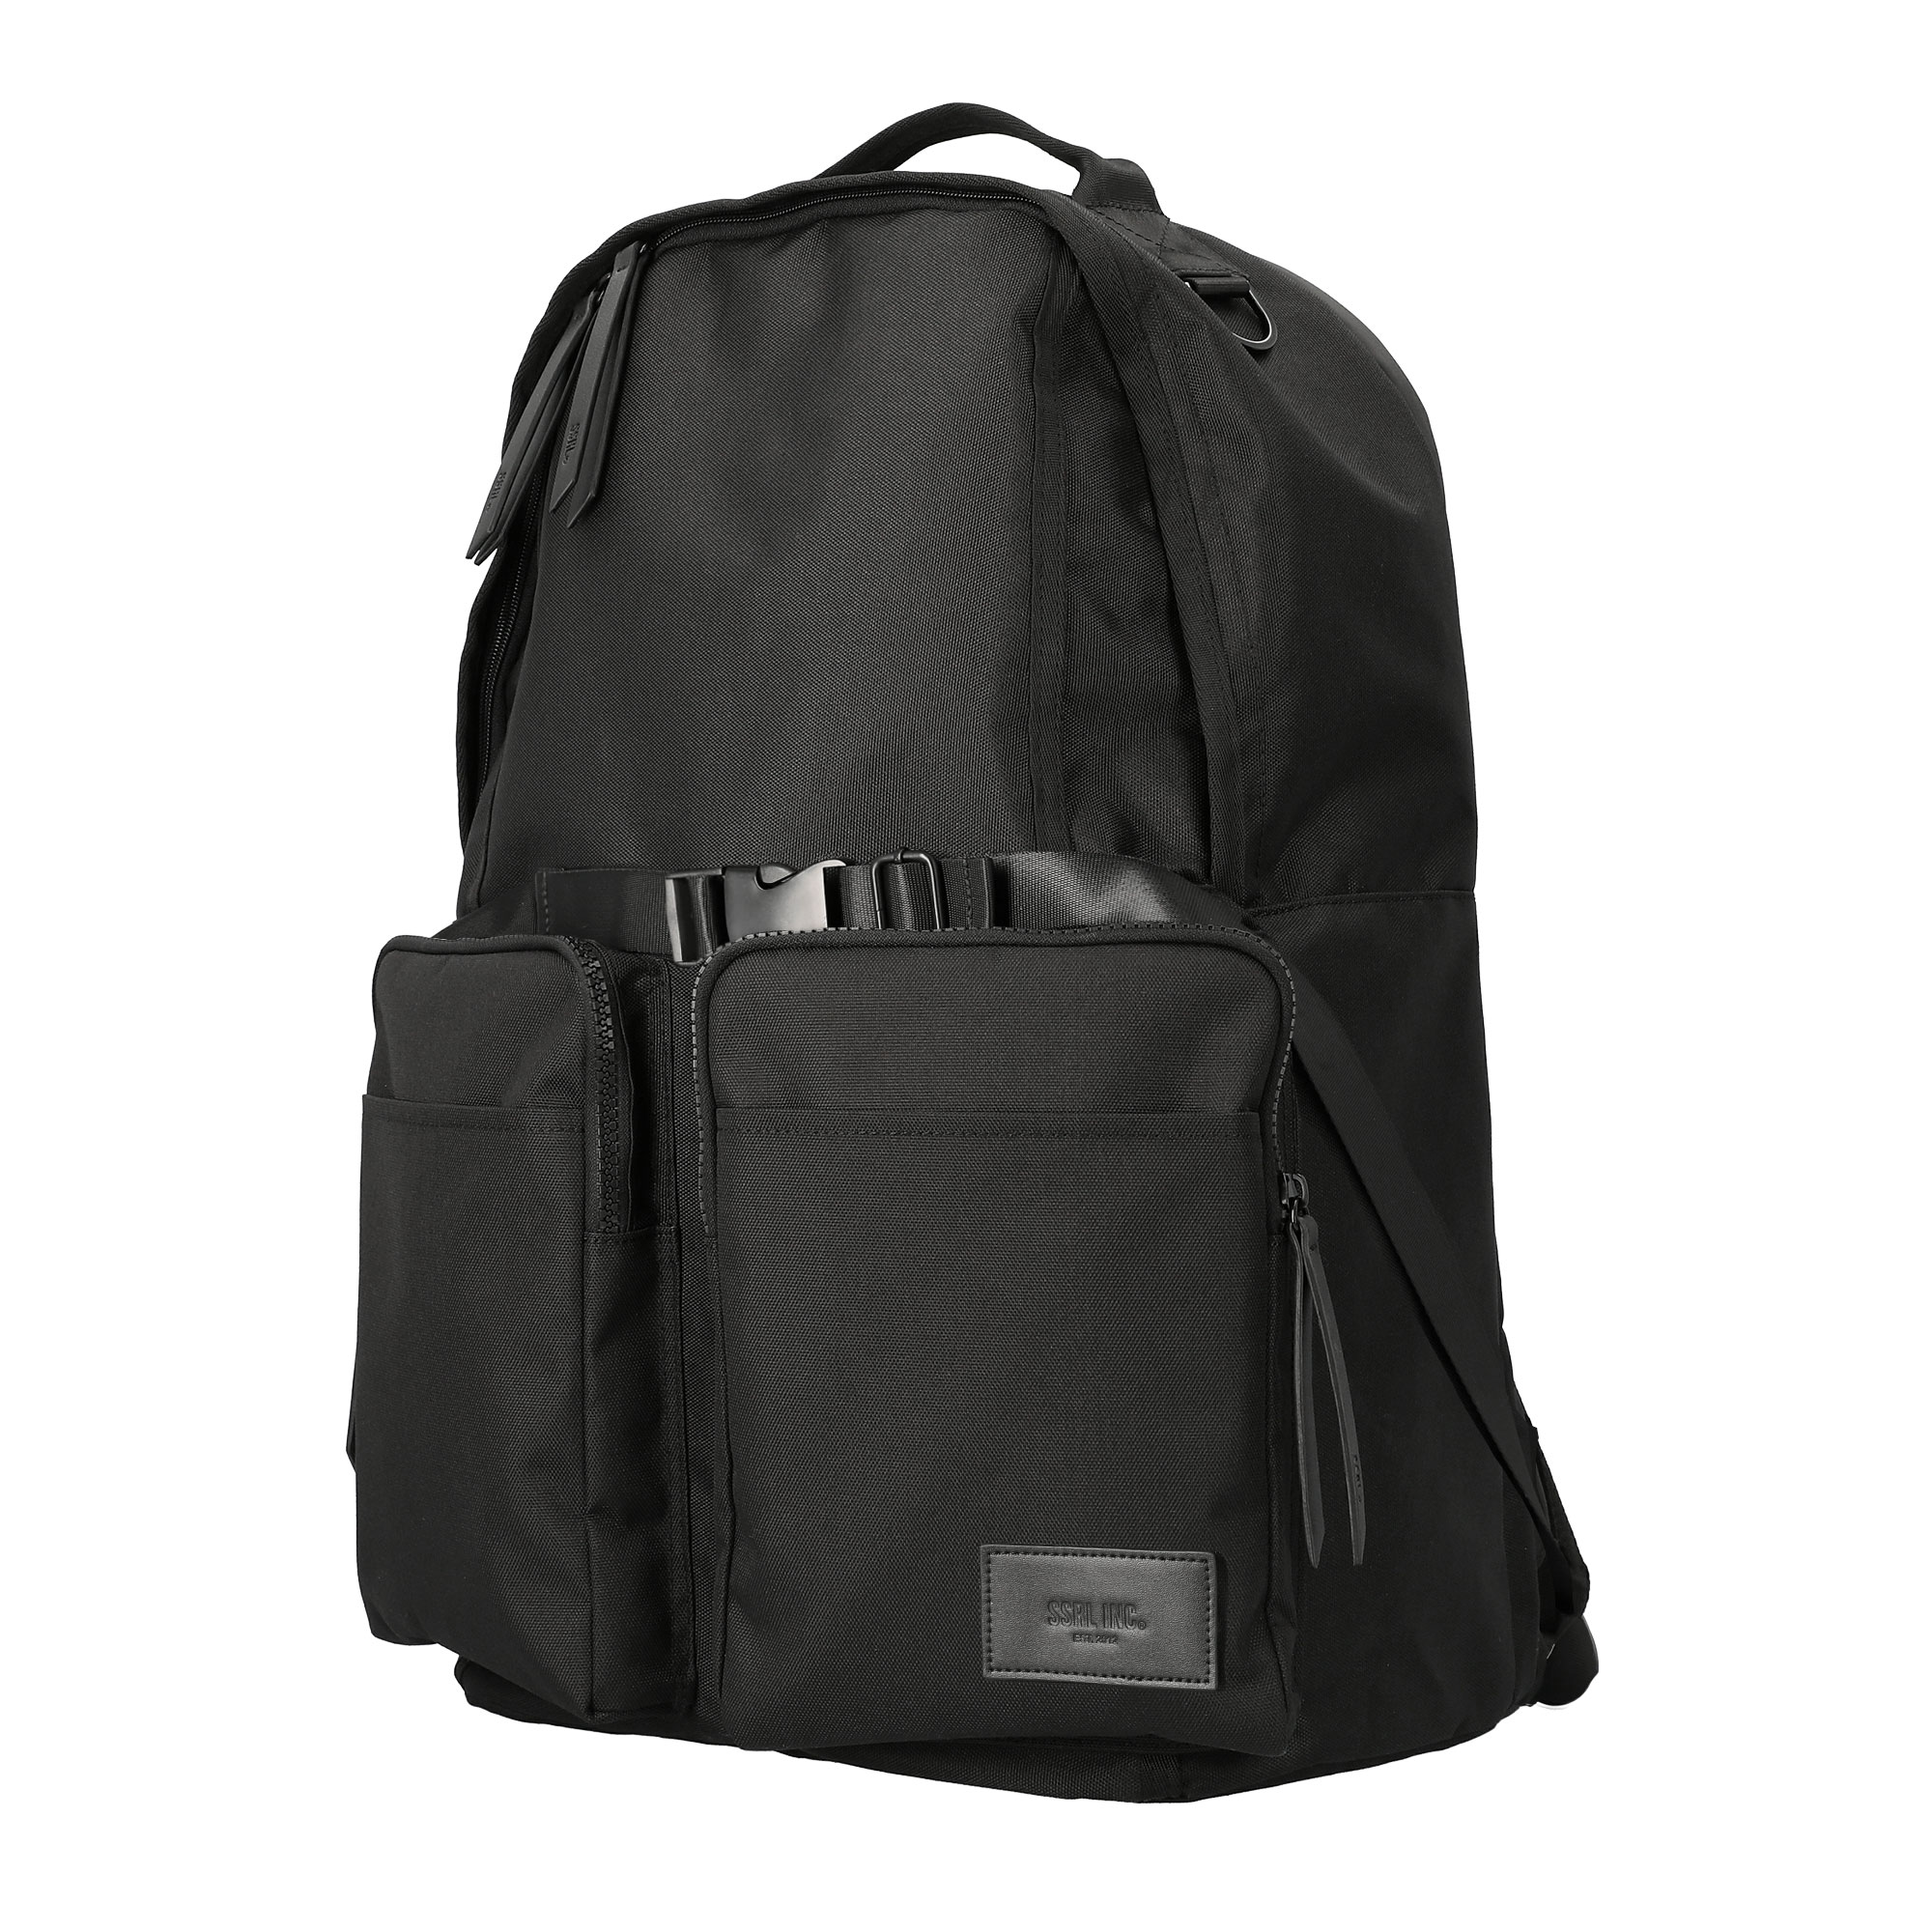 dual pocket backpack / black